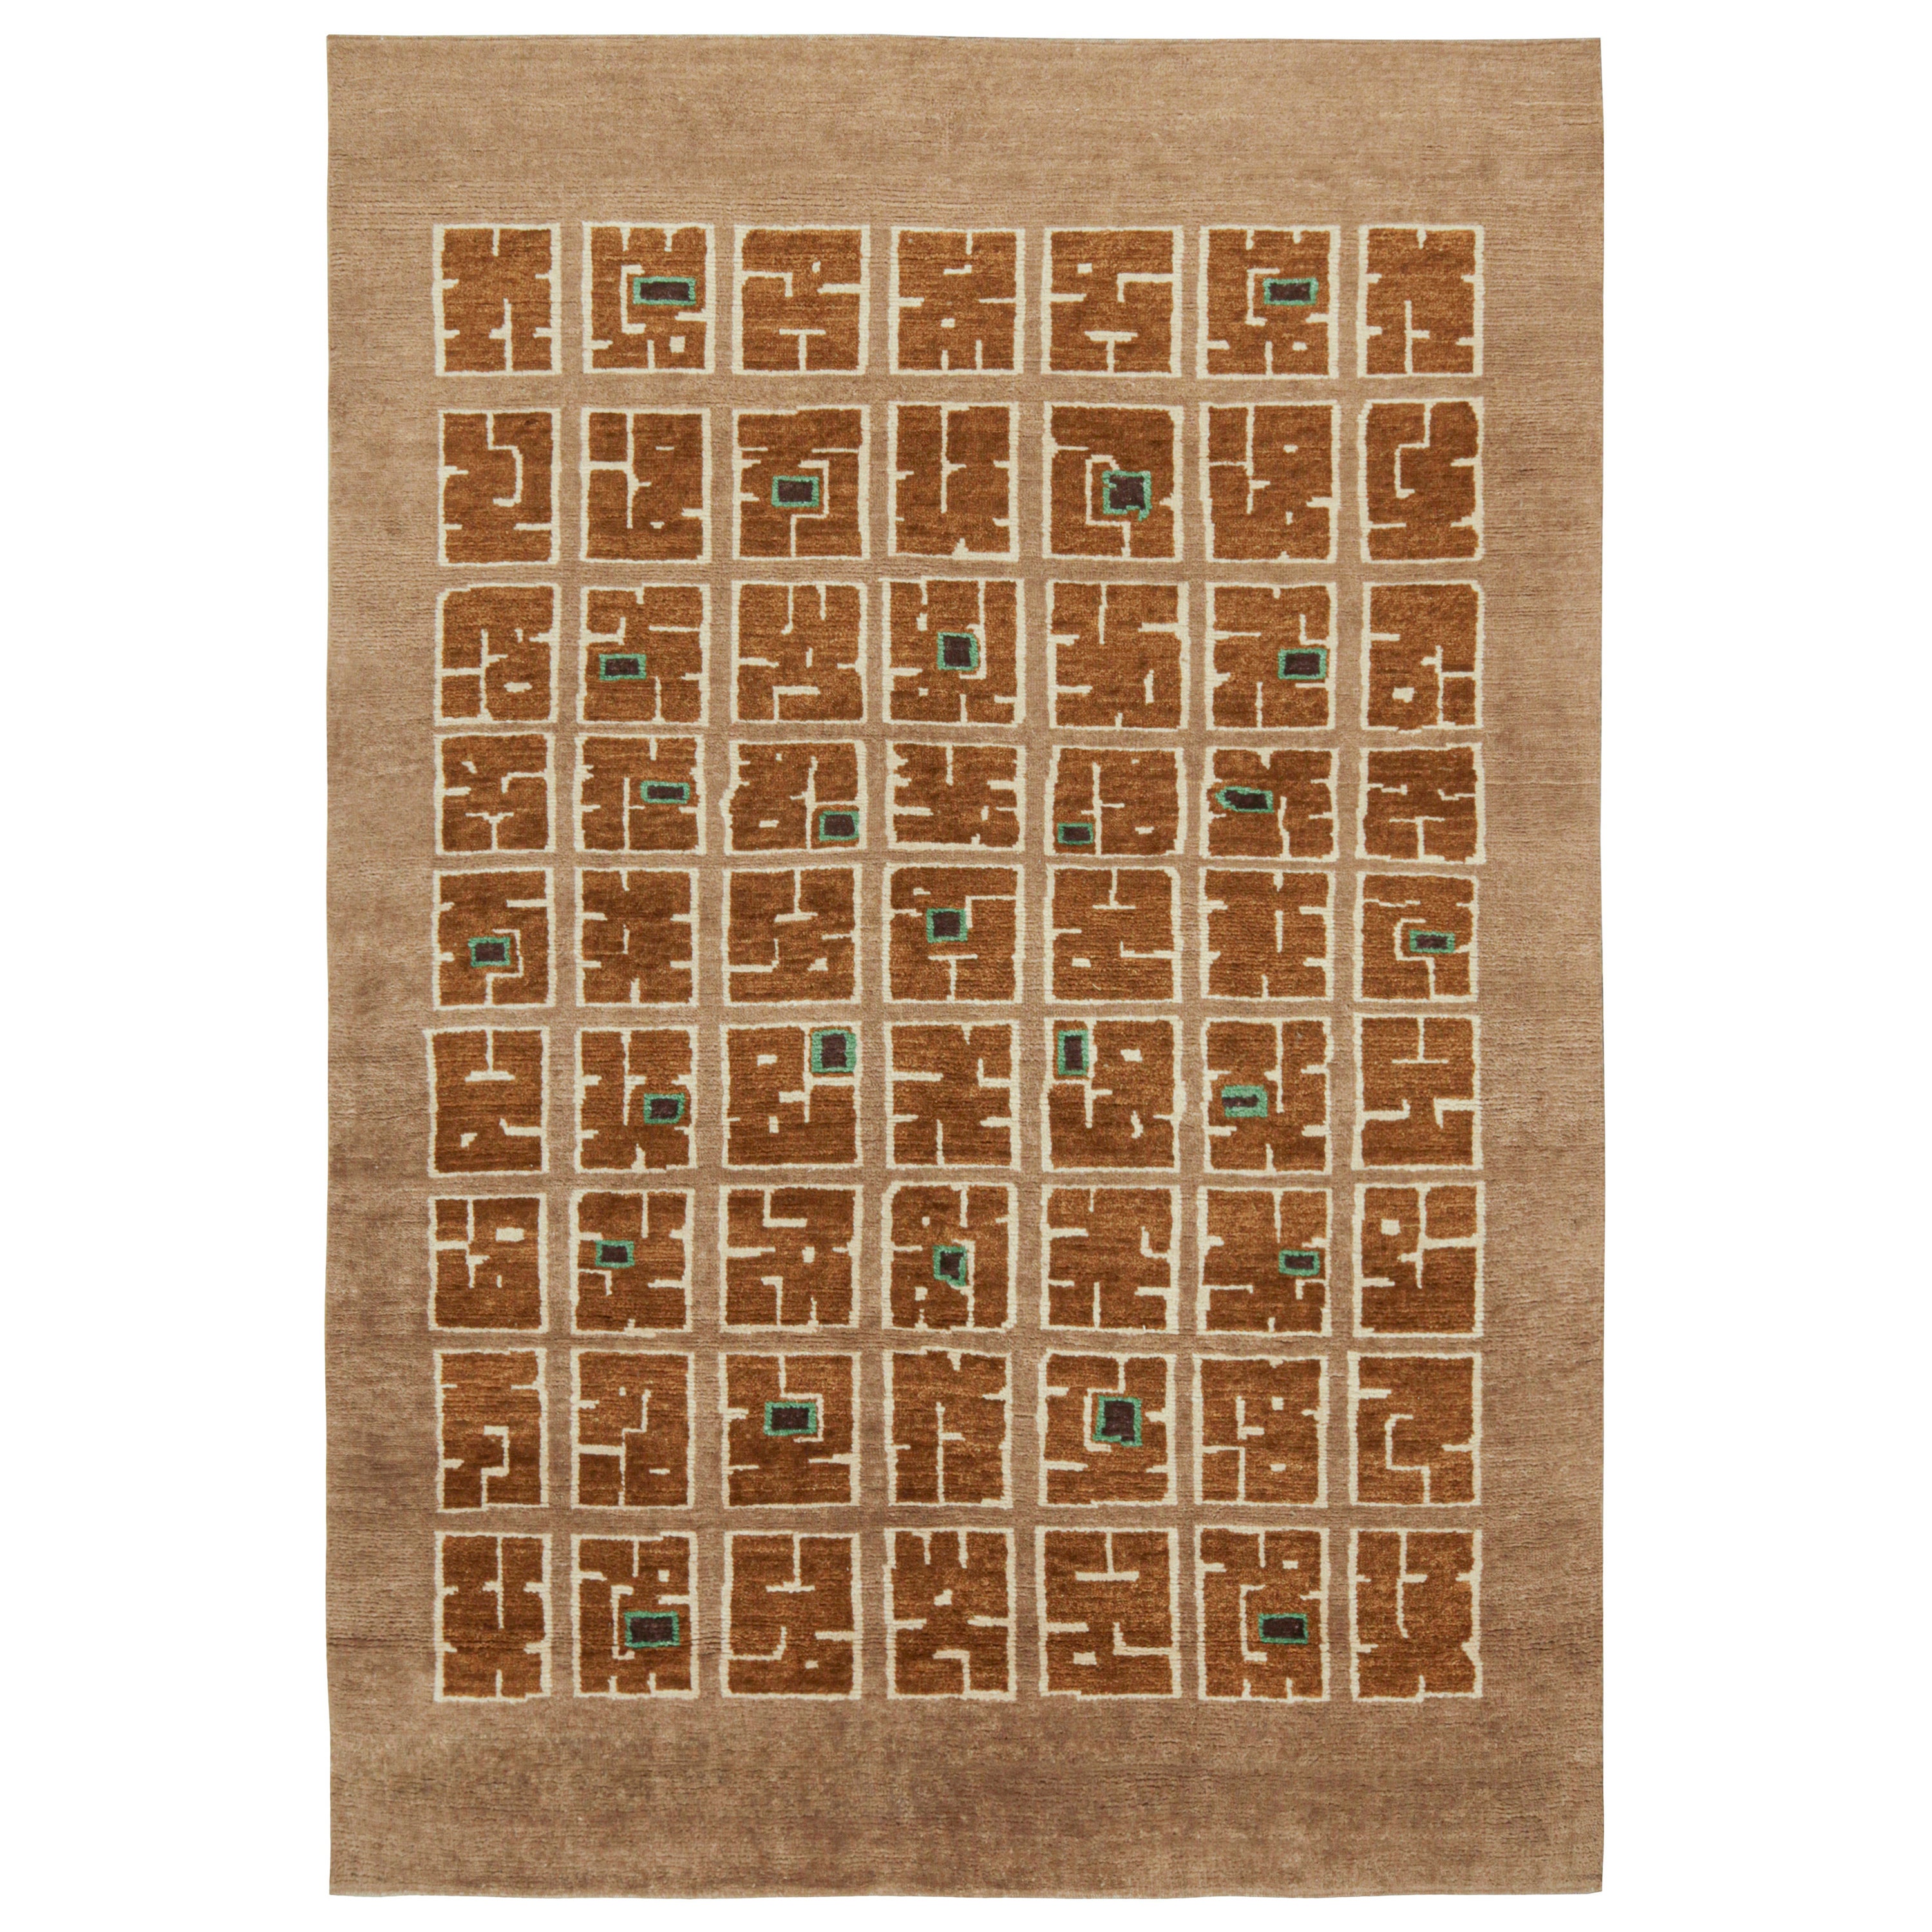 Rug & Kilim's French Style Art Deco Rug in Tones of Brown with Patterns (Tapis Art Déco de style français avec des motifs)